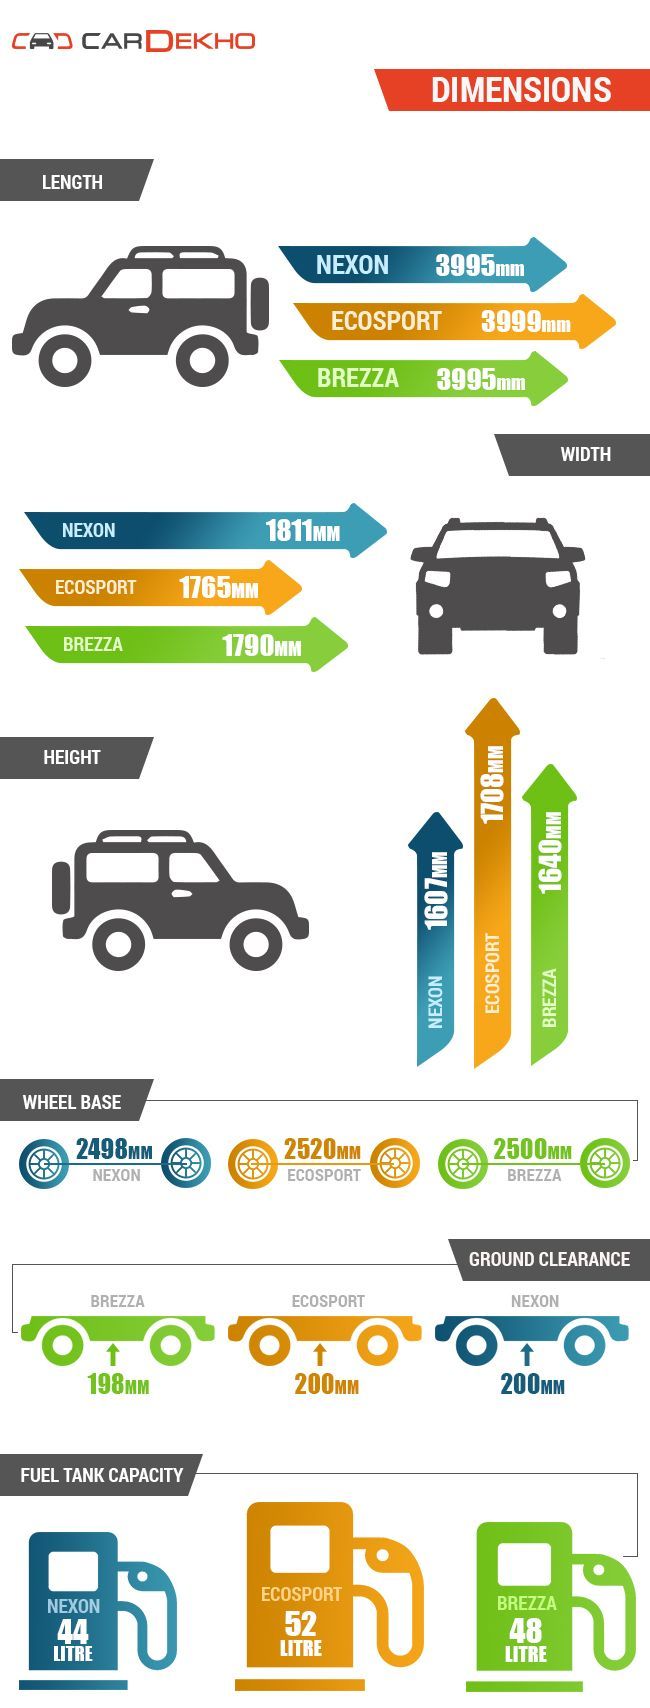 Tata Nexon Vs Ford EcoSport Vs Maruti Suzuki Vitara Brezza: Spec Comparo